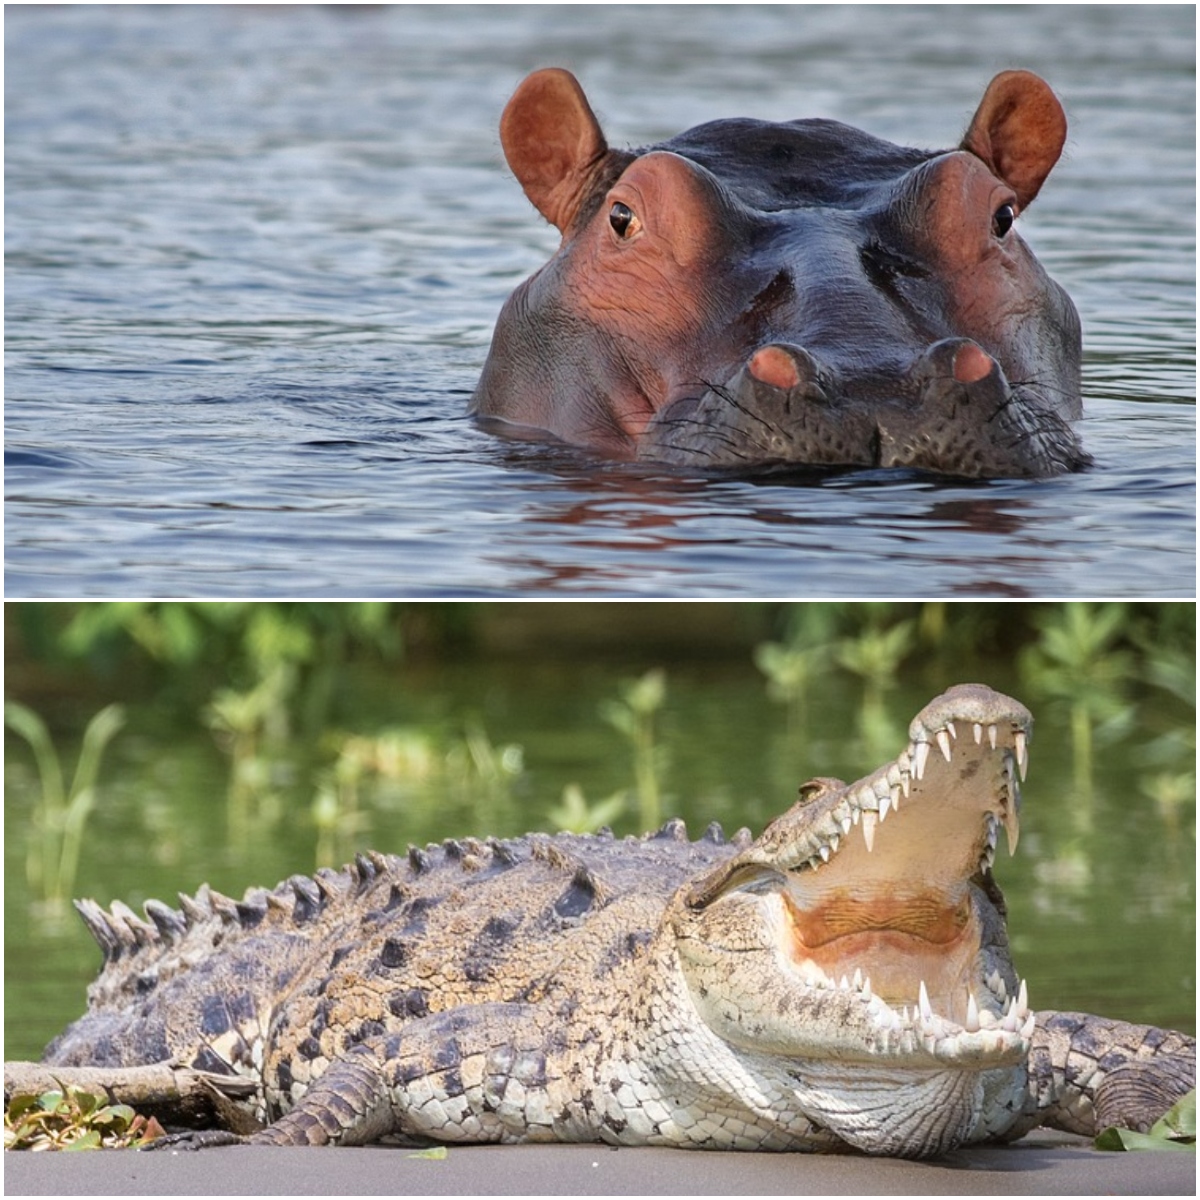  Hipopótamo vira barco em rio e 24 pessoas morrem após ataques de crocodilos 